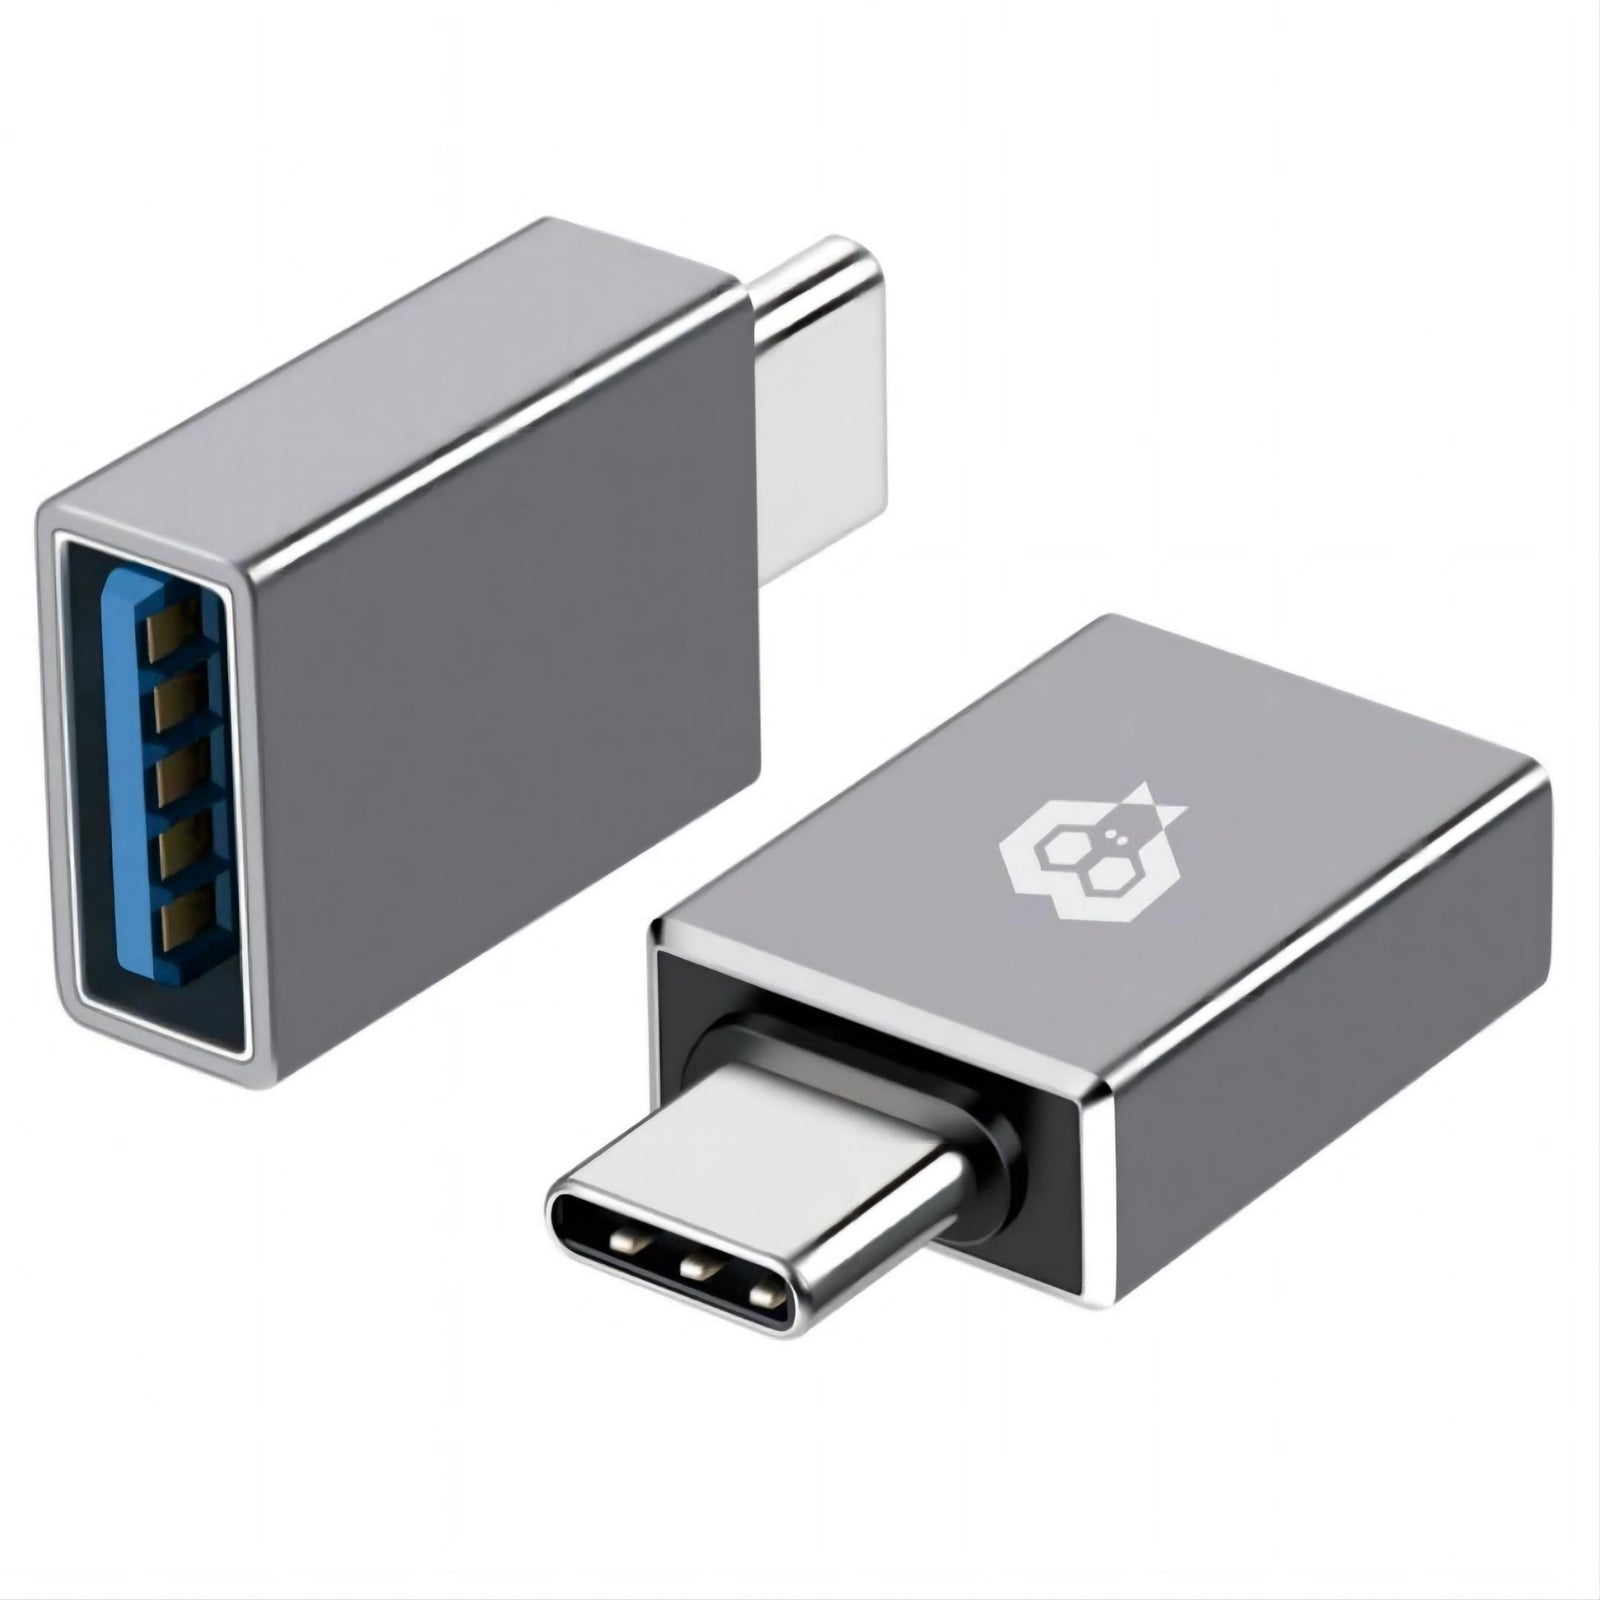 MonkeyTEC USB-C auf USB 3.0 Adapter für Macbook, iPhone, iPad, Android, Notebook und weitere USB-C Geräte